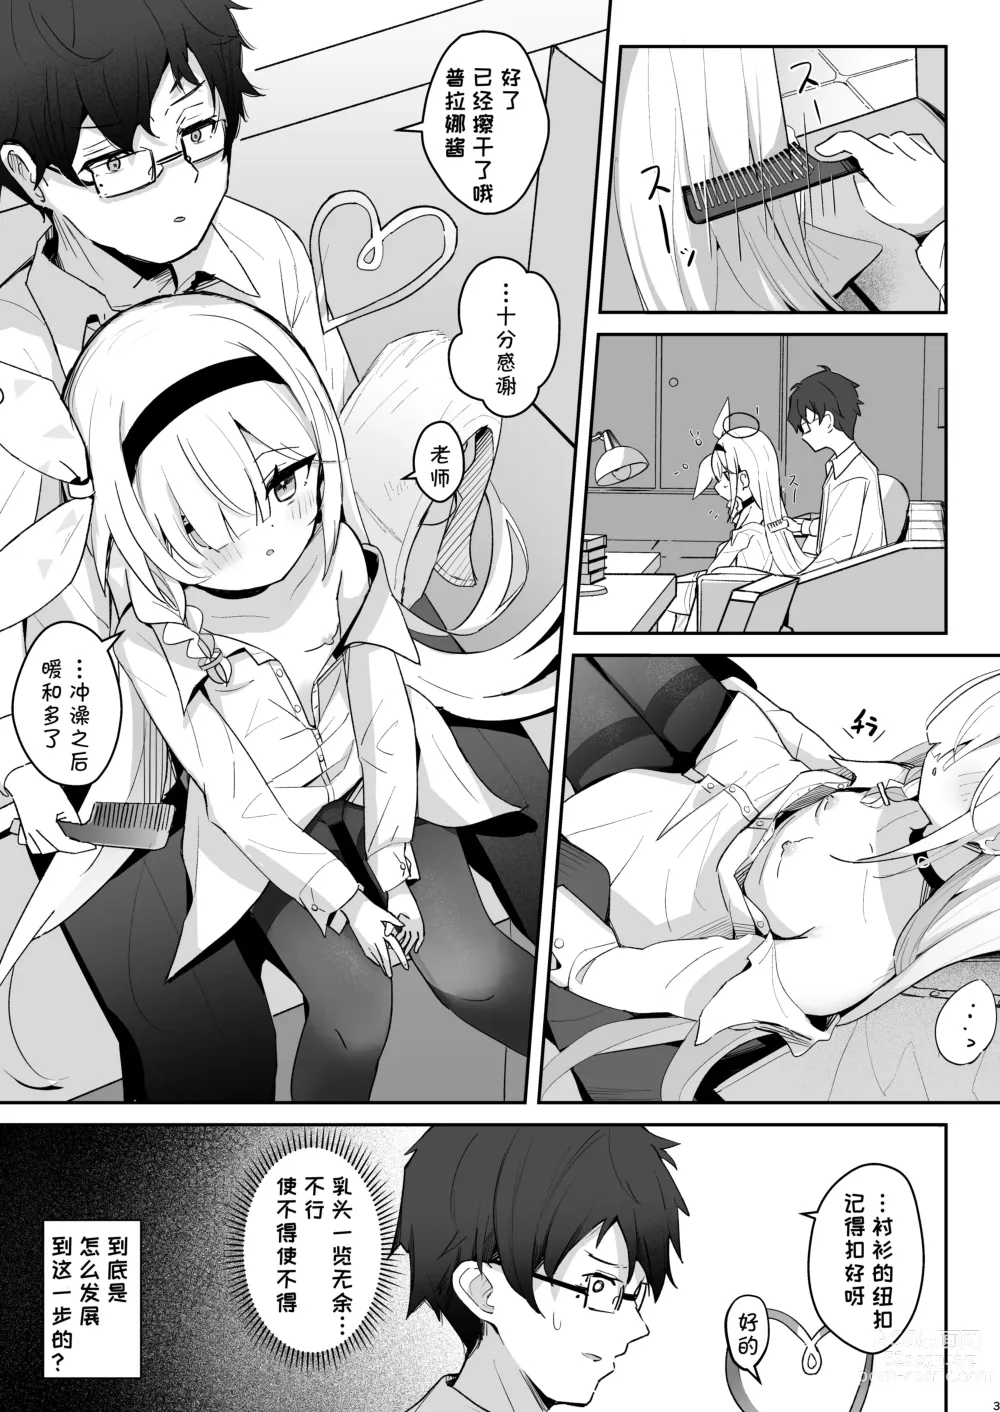 Page 4 of doujinshi 得知了这份温暖之后。